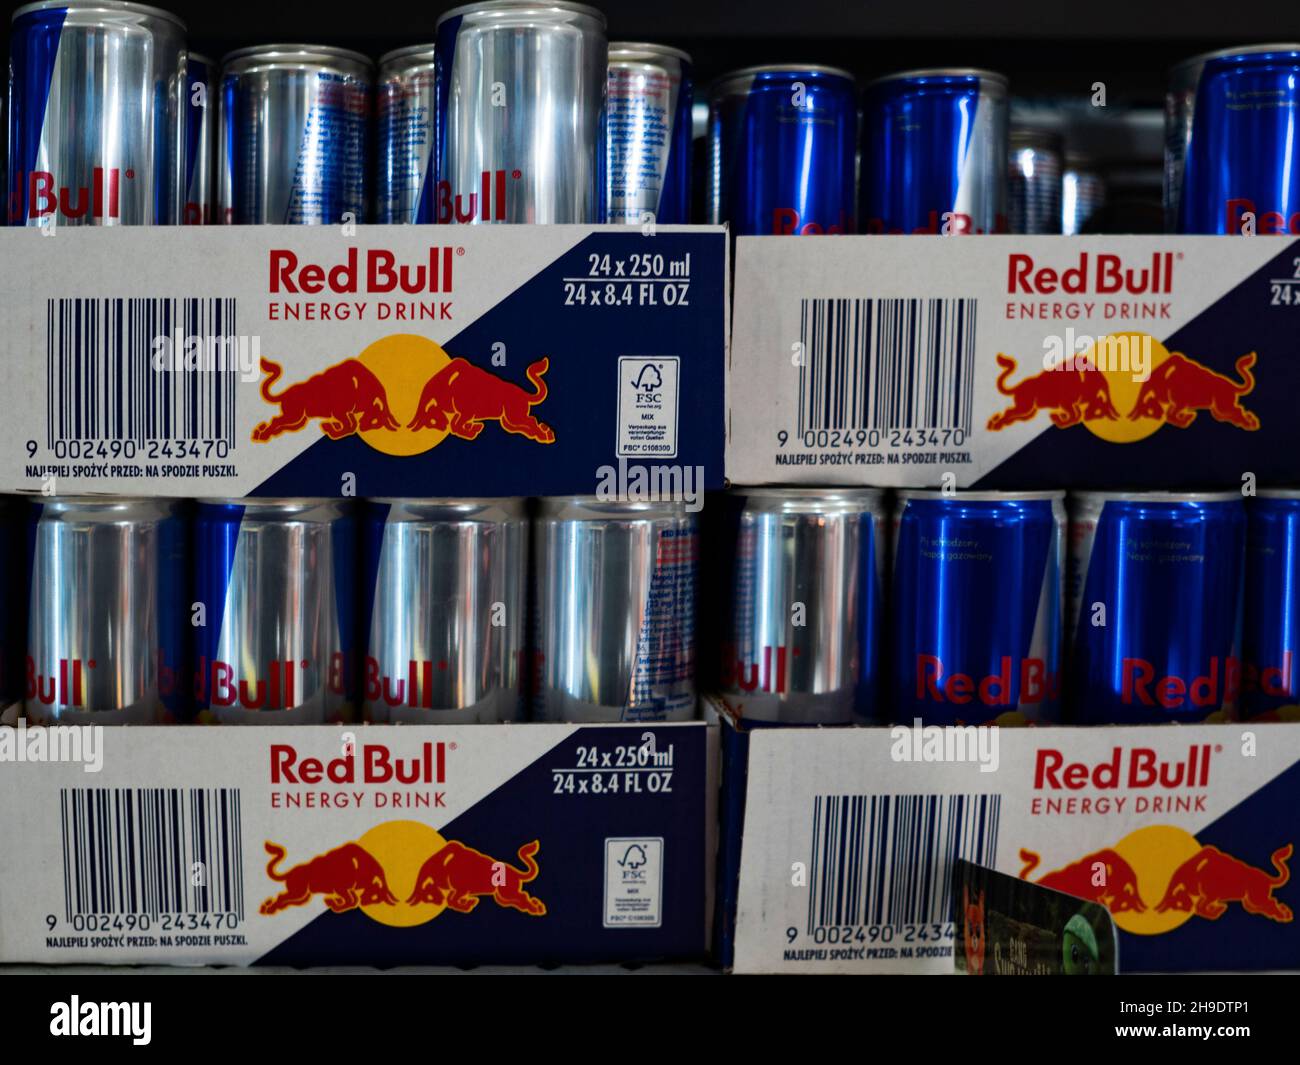 Kom op sjælden Vejrtrækning Page 2 - Red Bull Cans High Resolution Stock Photography and Images - Alamy